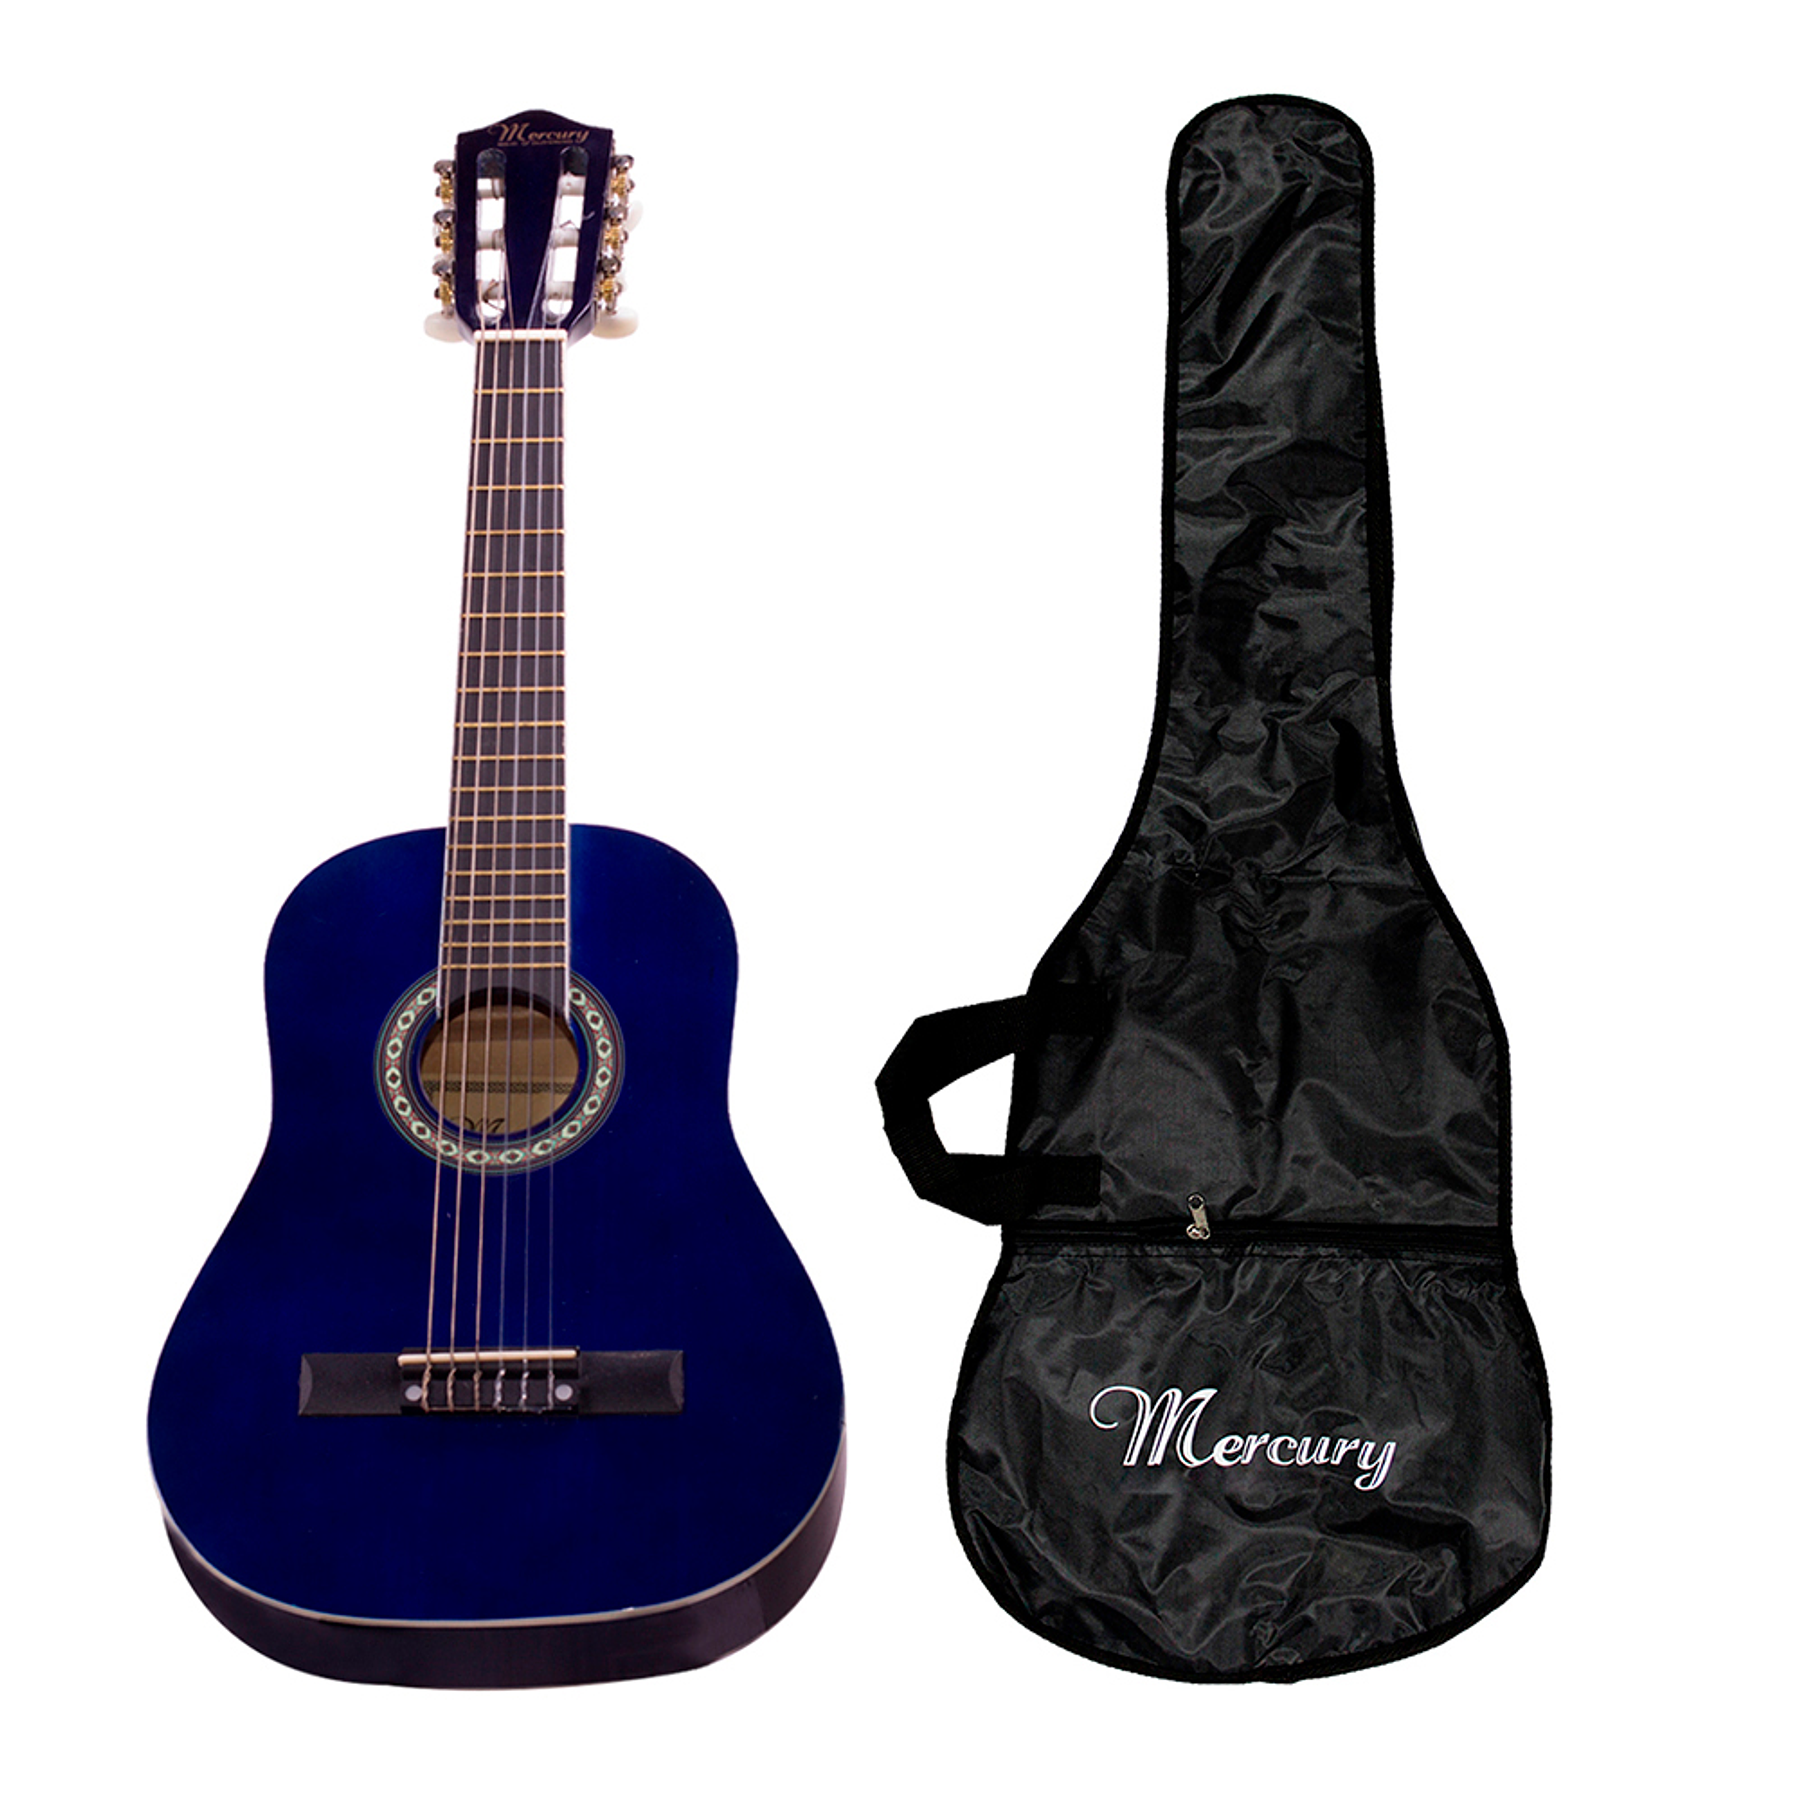 Guitarra Clásica 30 MGN01 Para Niño, Color Azul